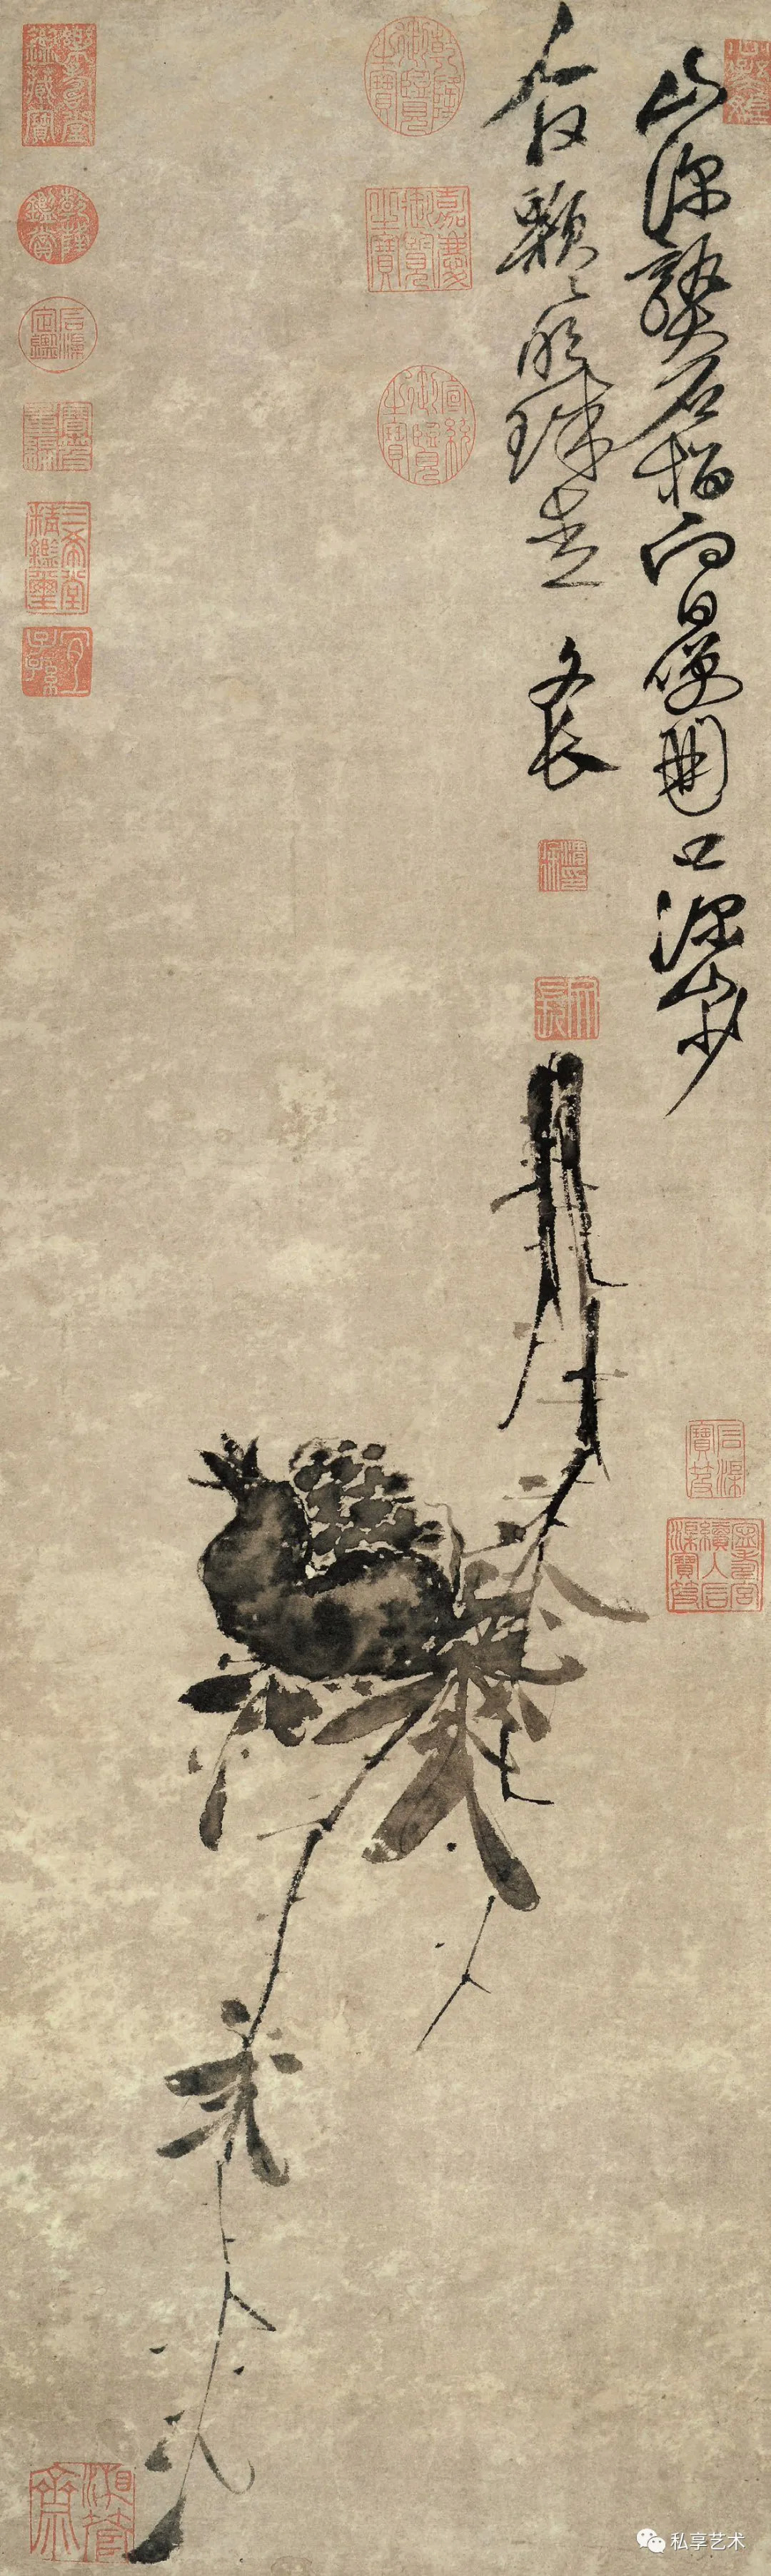 墨 21 M №360 中国 芸術鑑賞用 大型古墨 宣和之寶「龍囲瓢箪」縦26